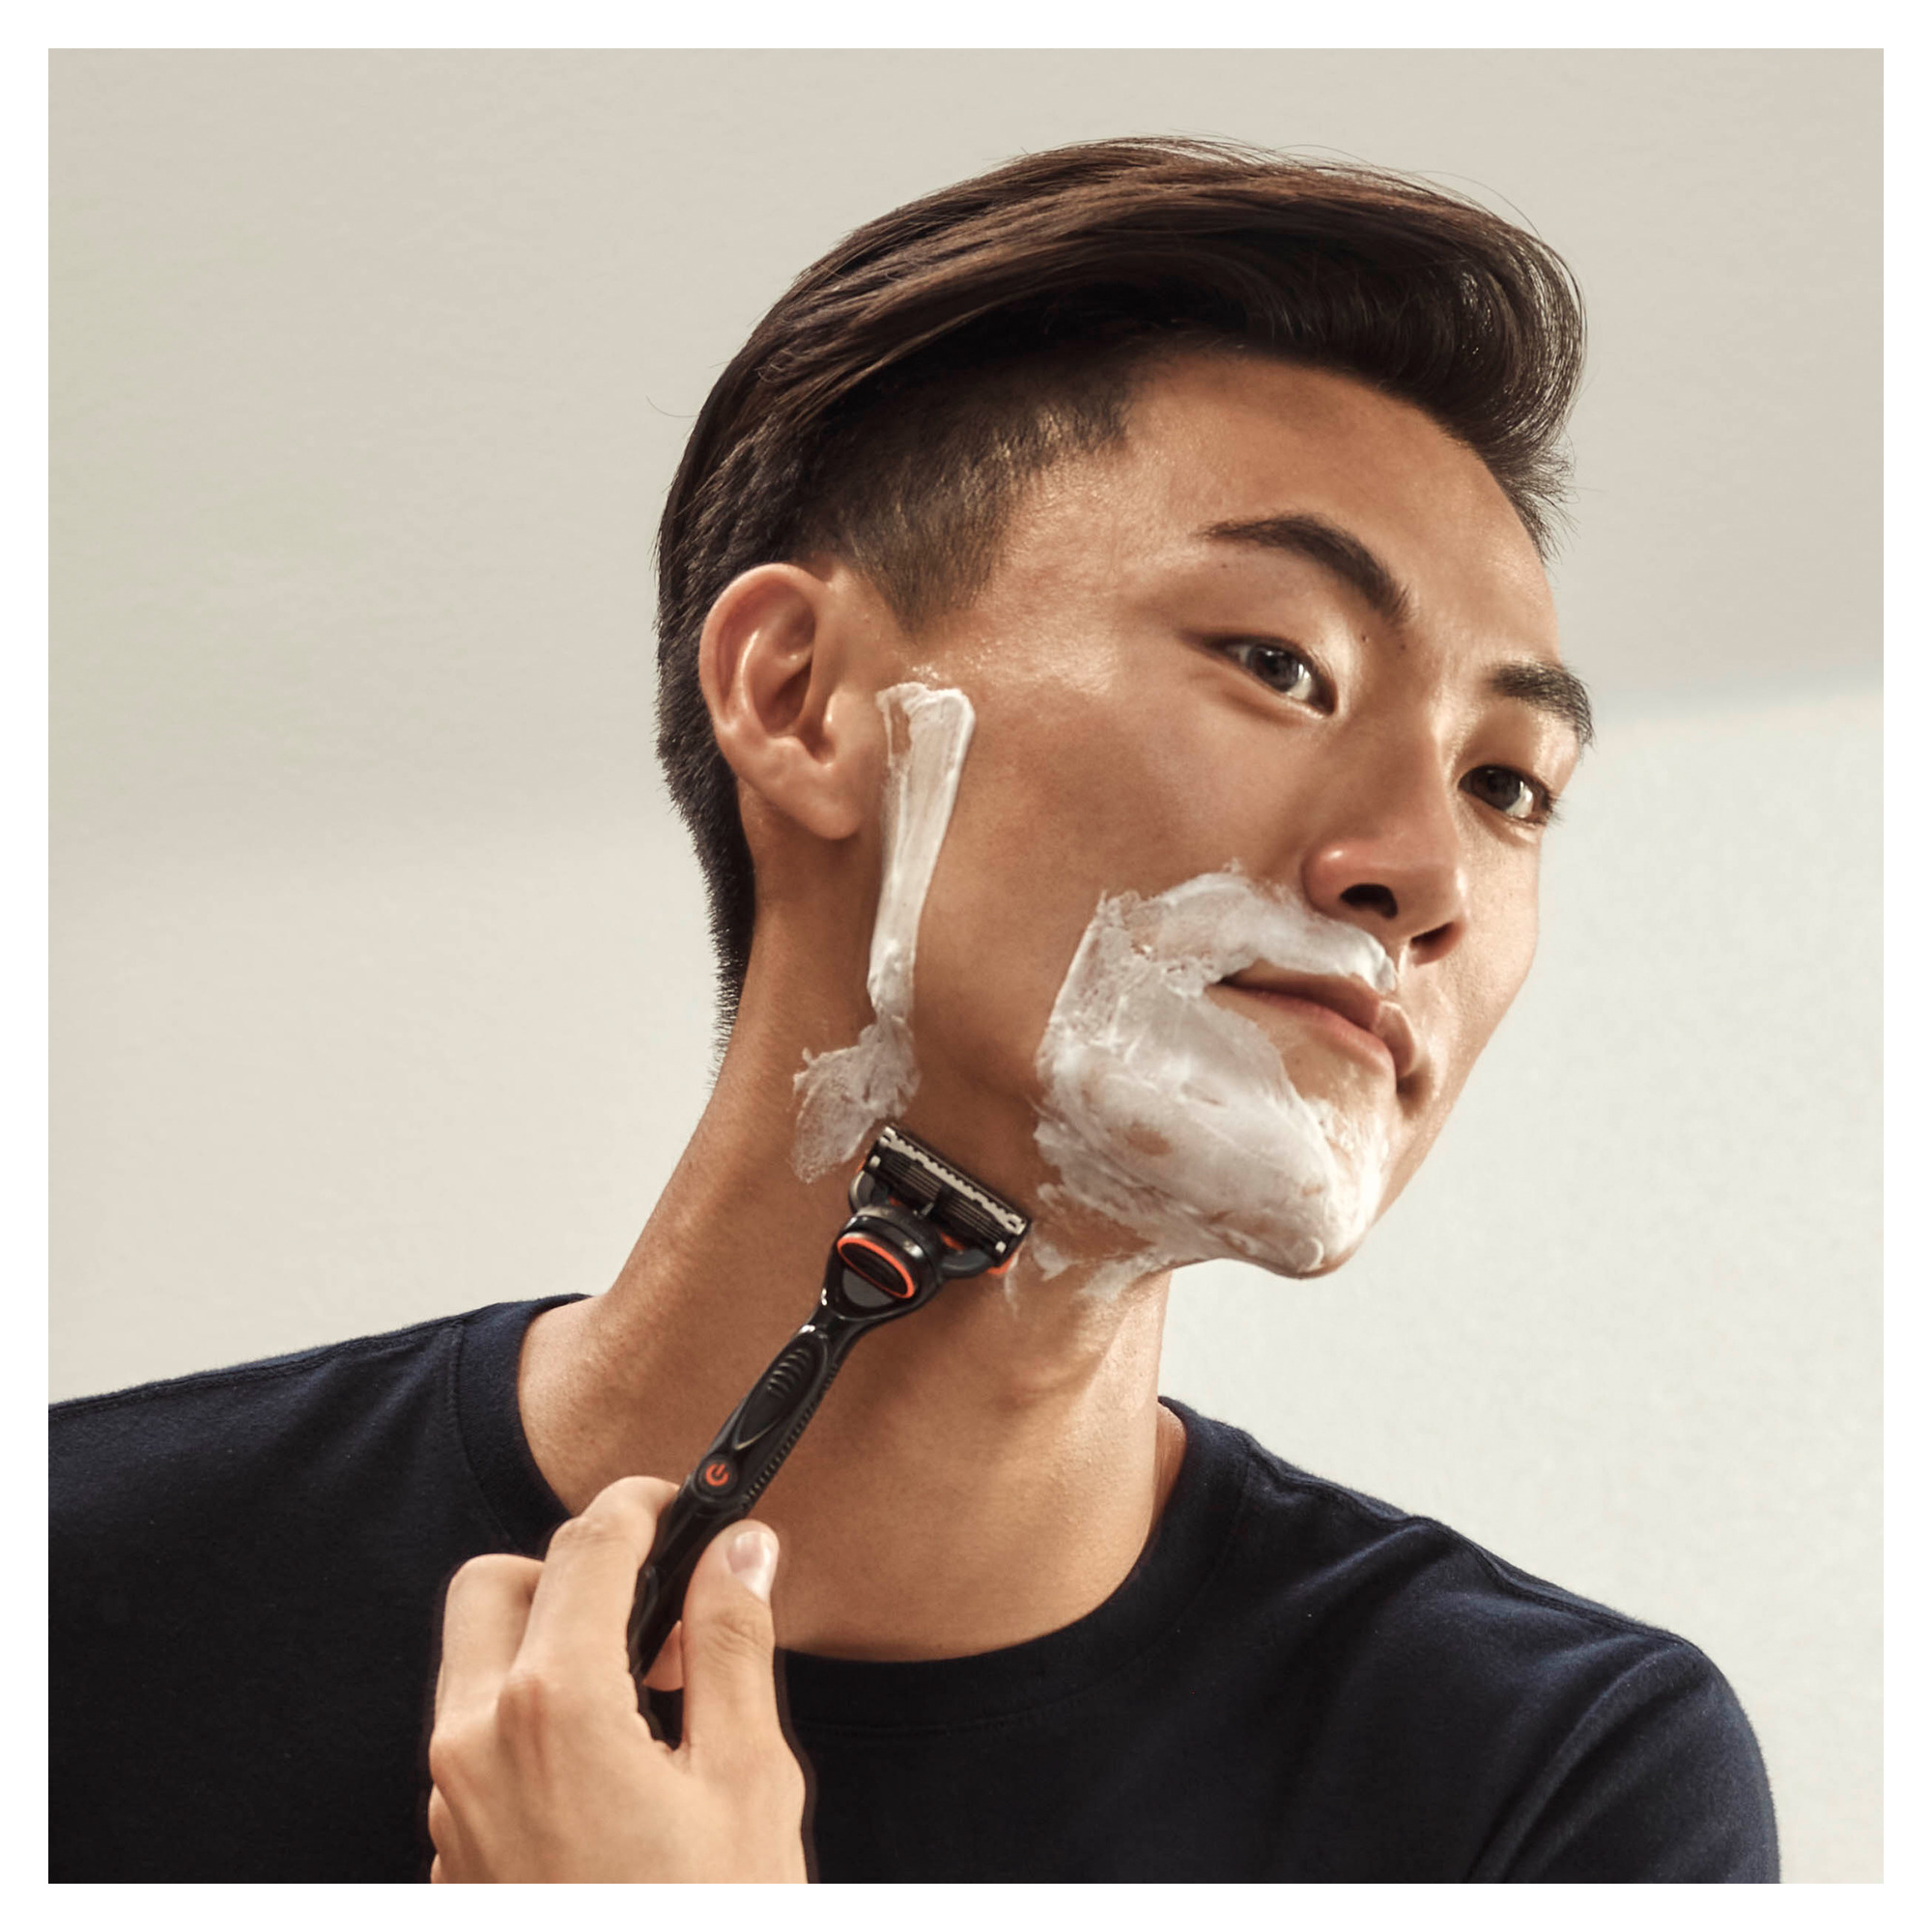 Man shaving face